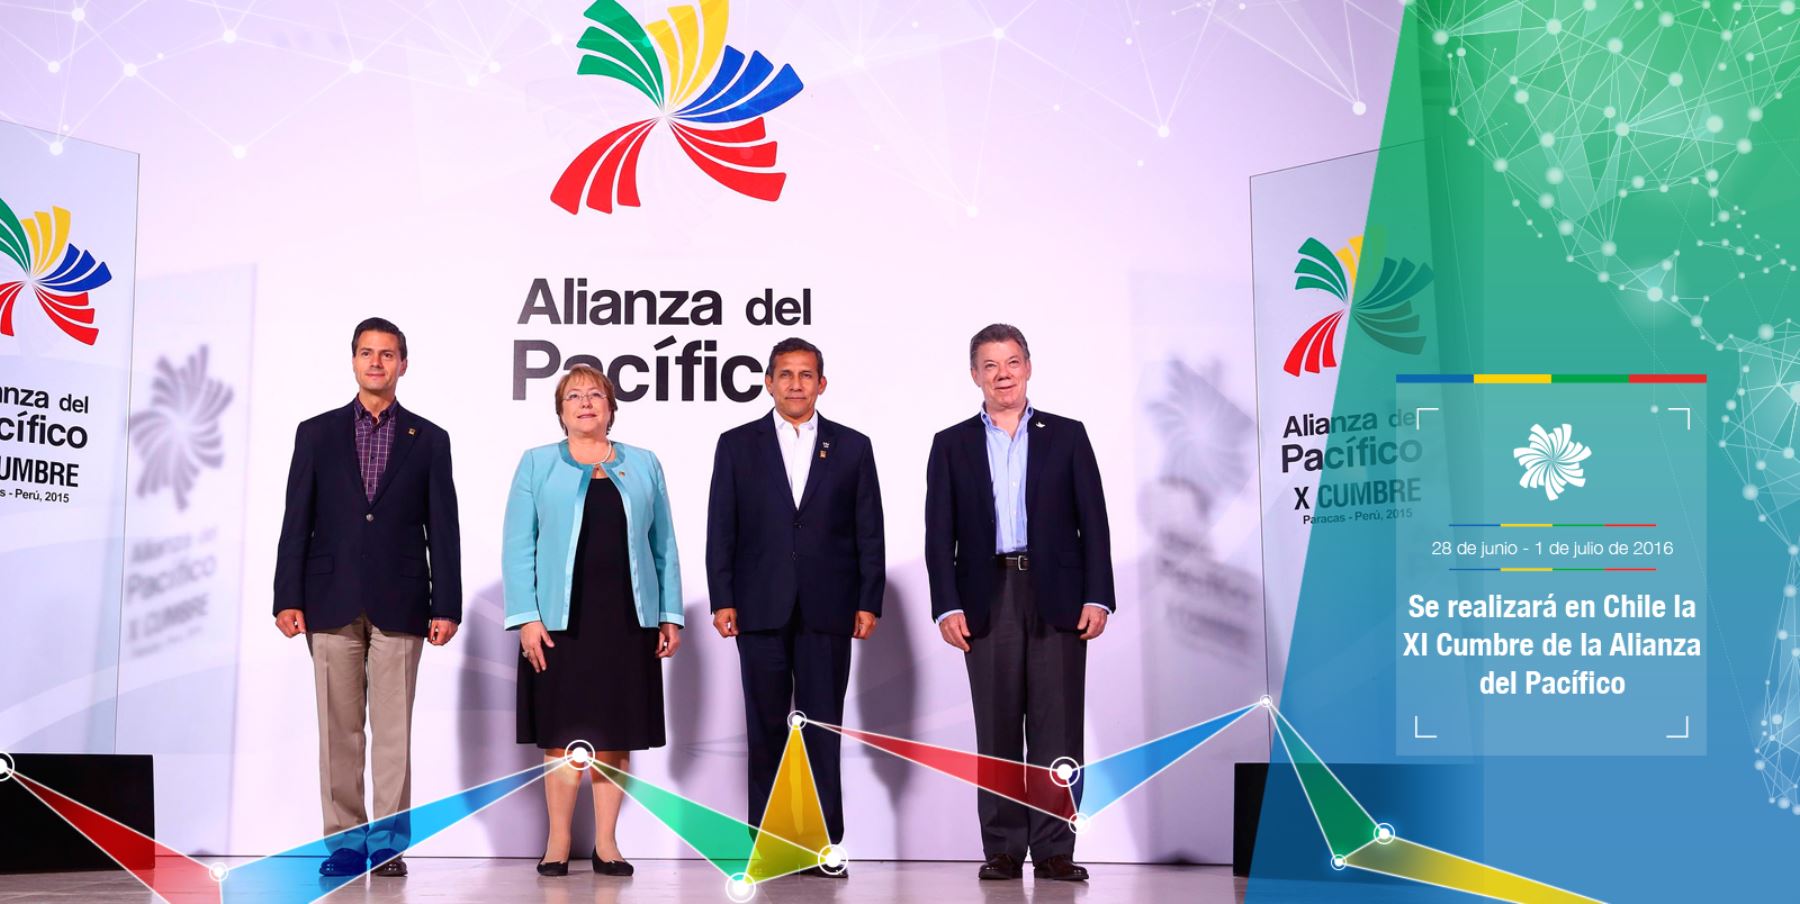 XI Cumbre de la Alianza del Pacífico en Chile 2016. Difusión